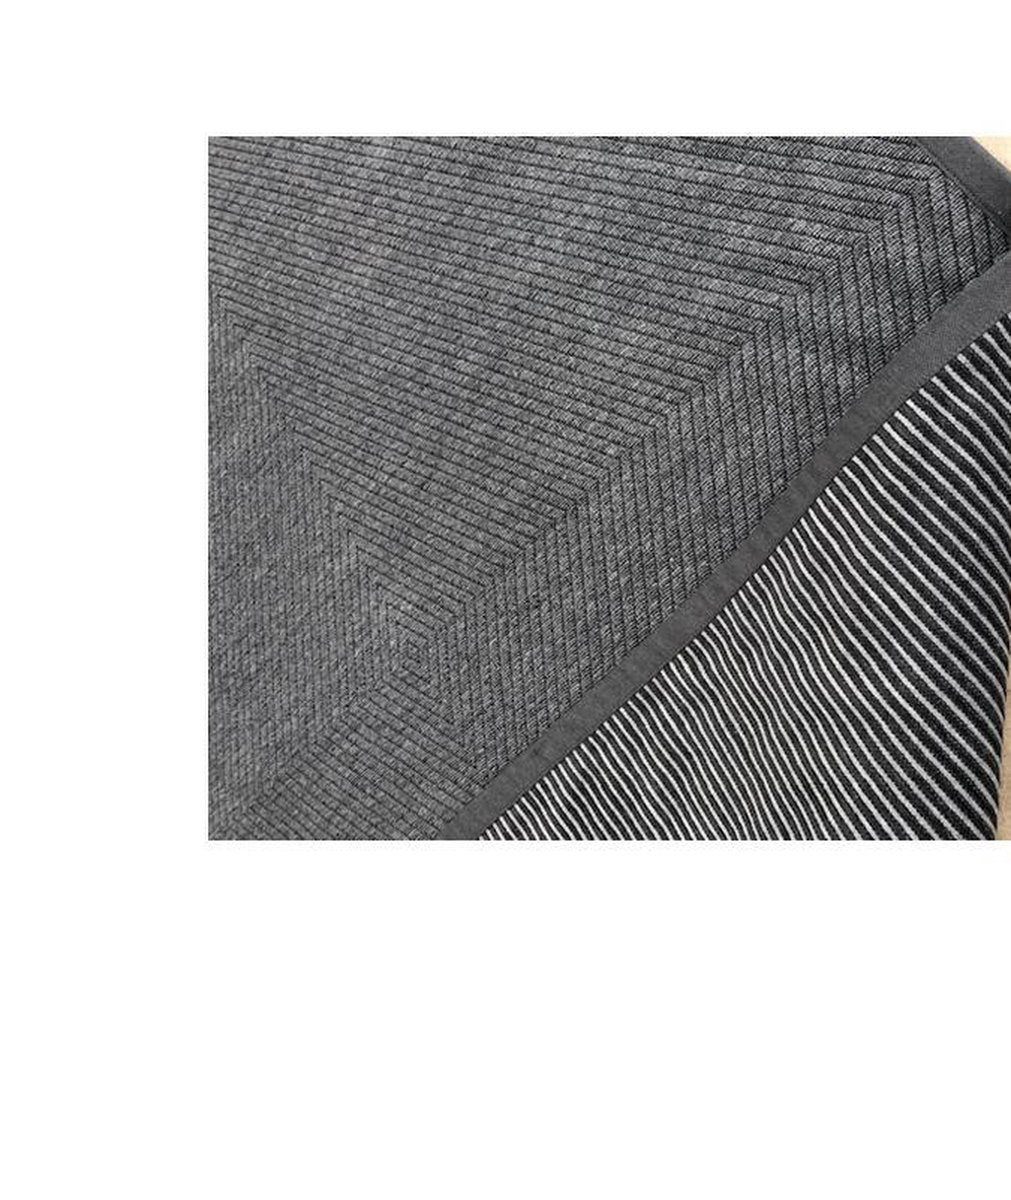 sisal Vloerkleed recto verso - tweezijdig vloerkleed - gratis antislip bijgeleverd -160/230 - donkergrijs carbon - tapijt - gestreept en visgraat